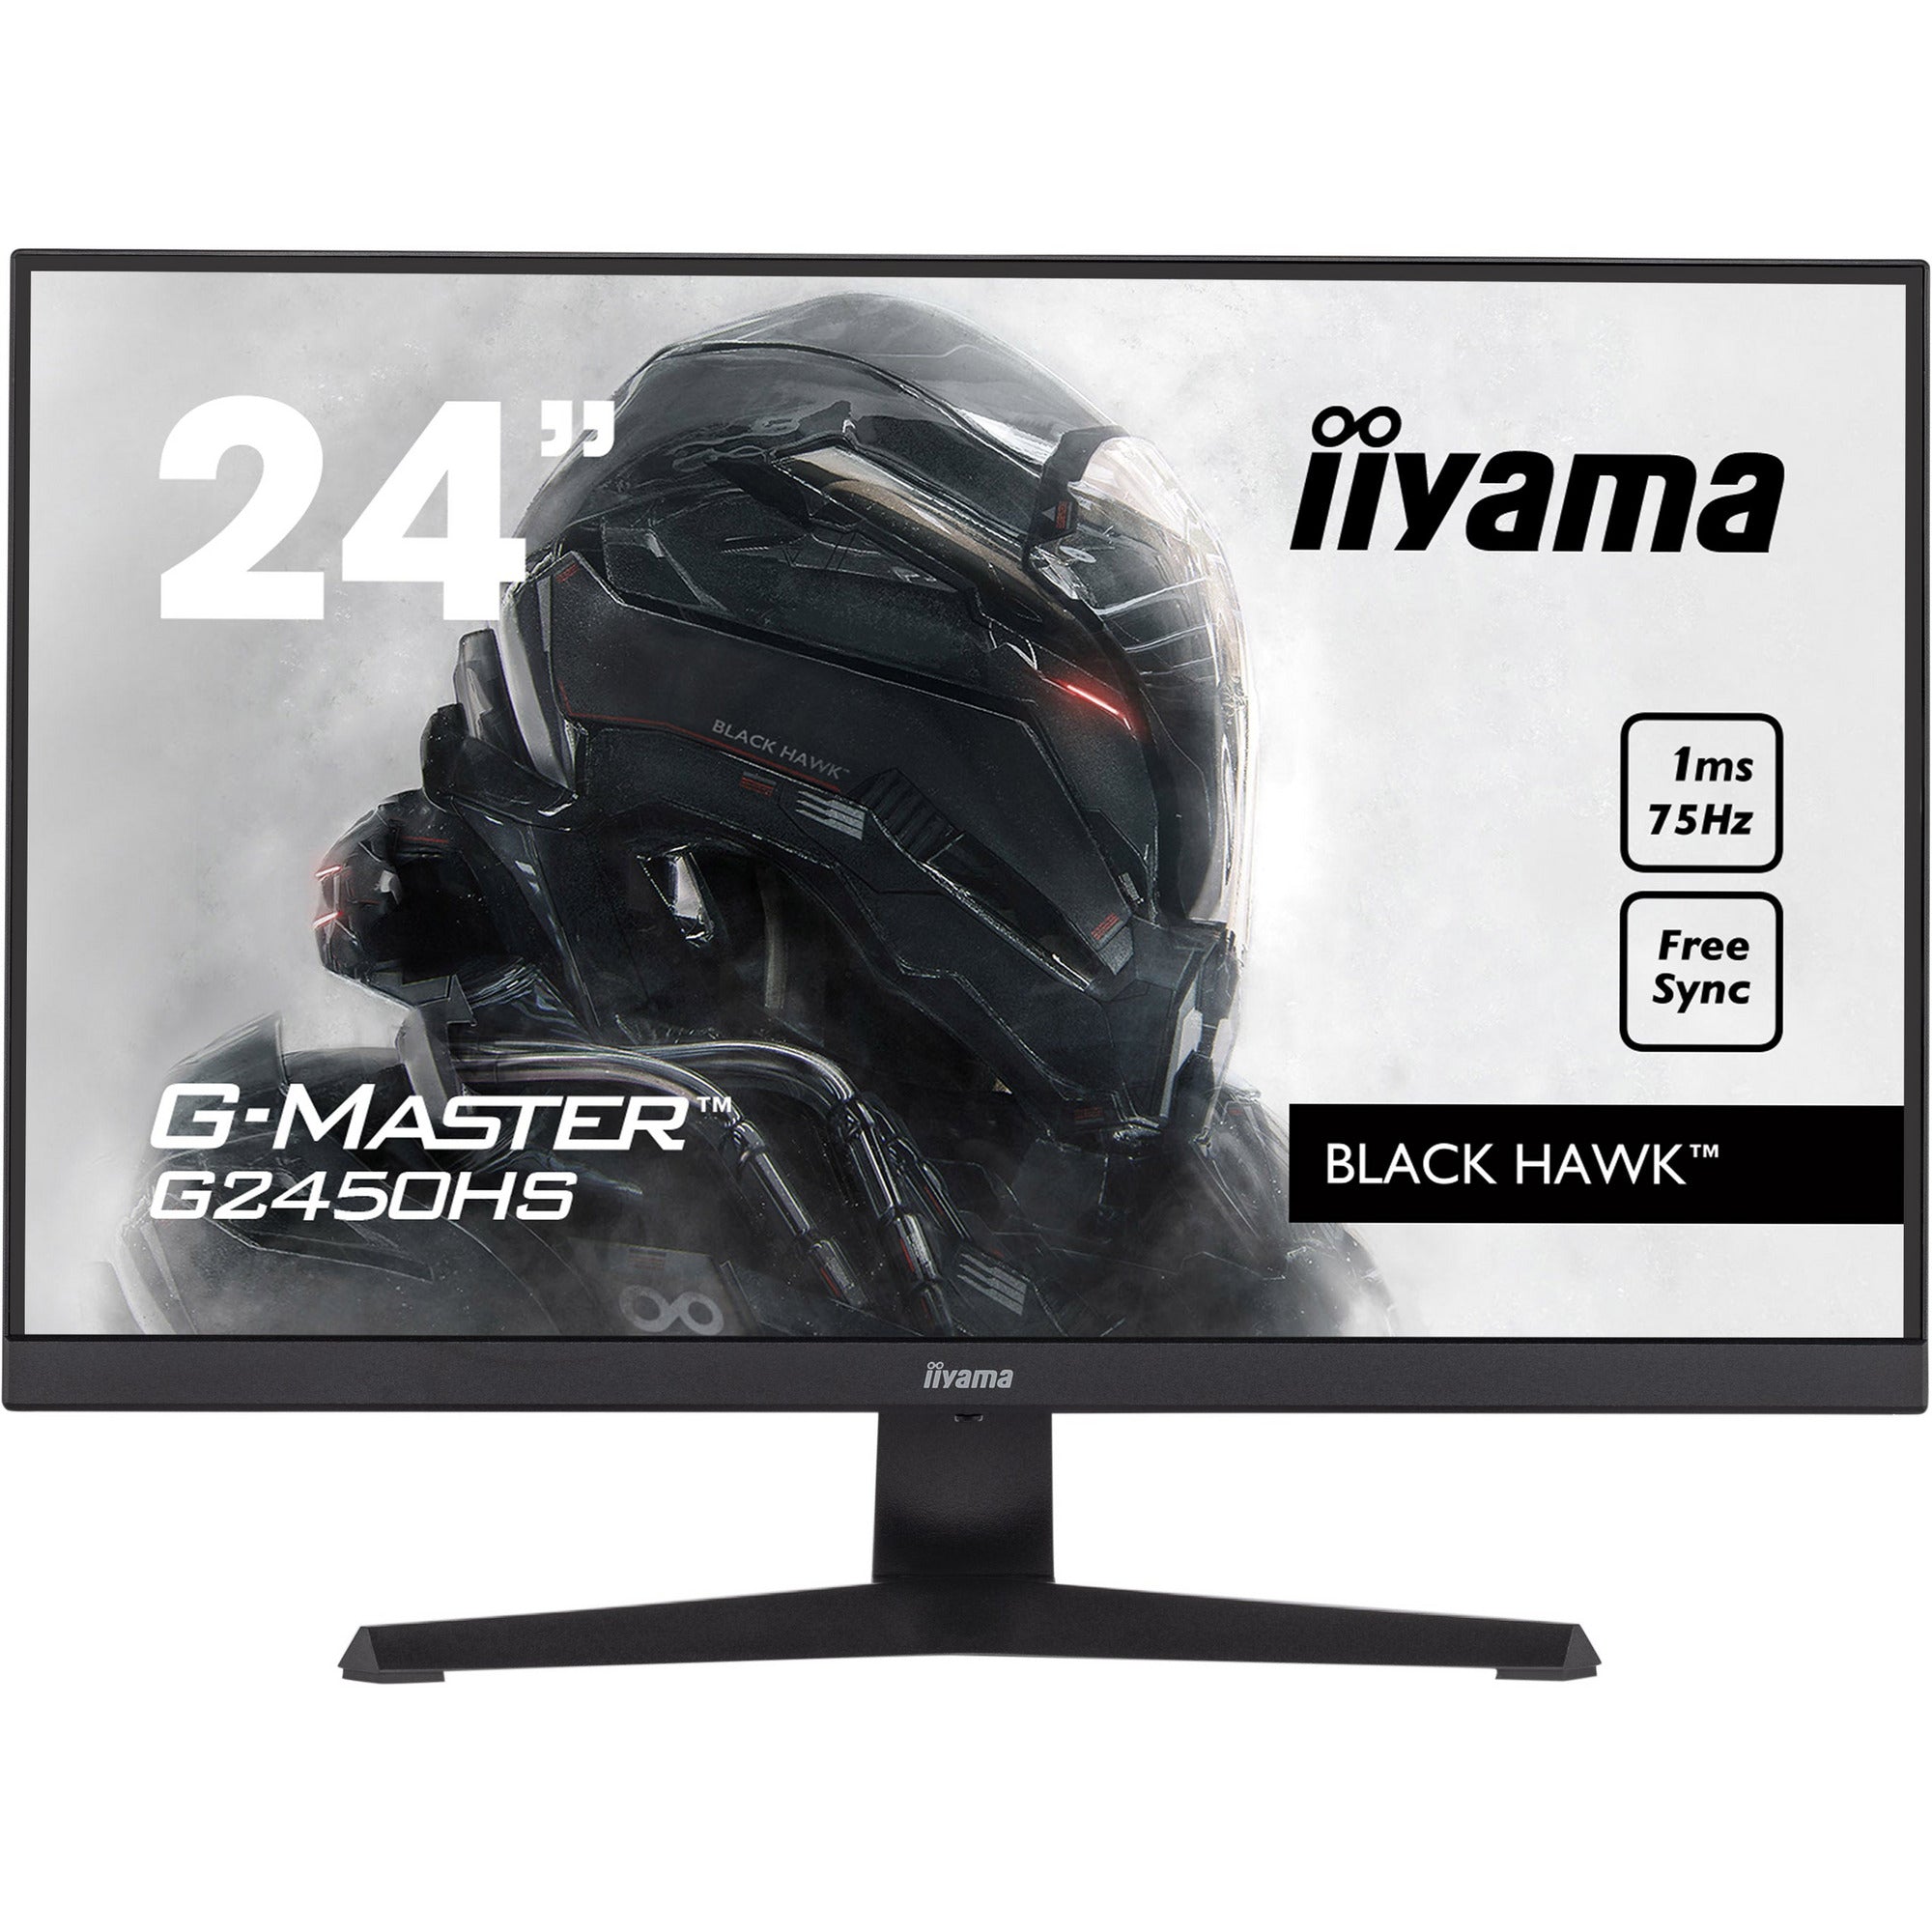 iiyama G-Master G2450HS-B1 24" VA 75Hz 1ms MPRT Black Hawk Gaming Monitor